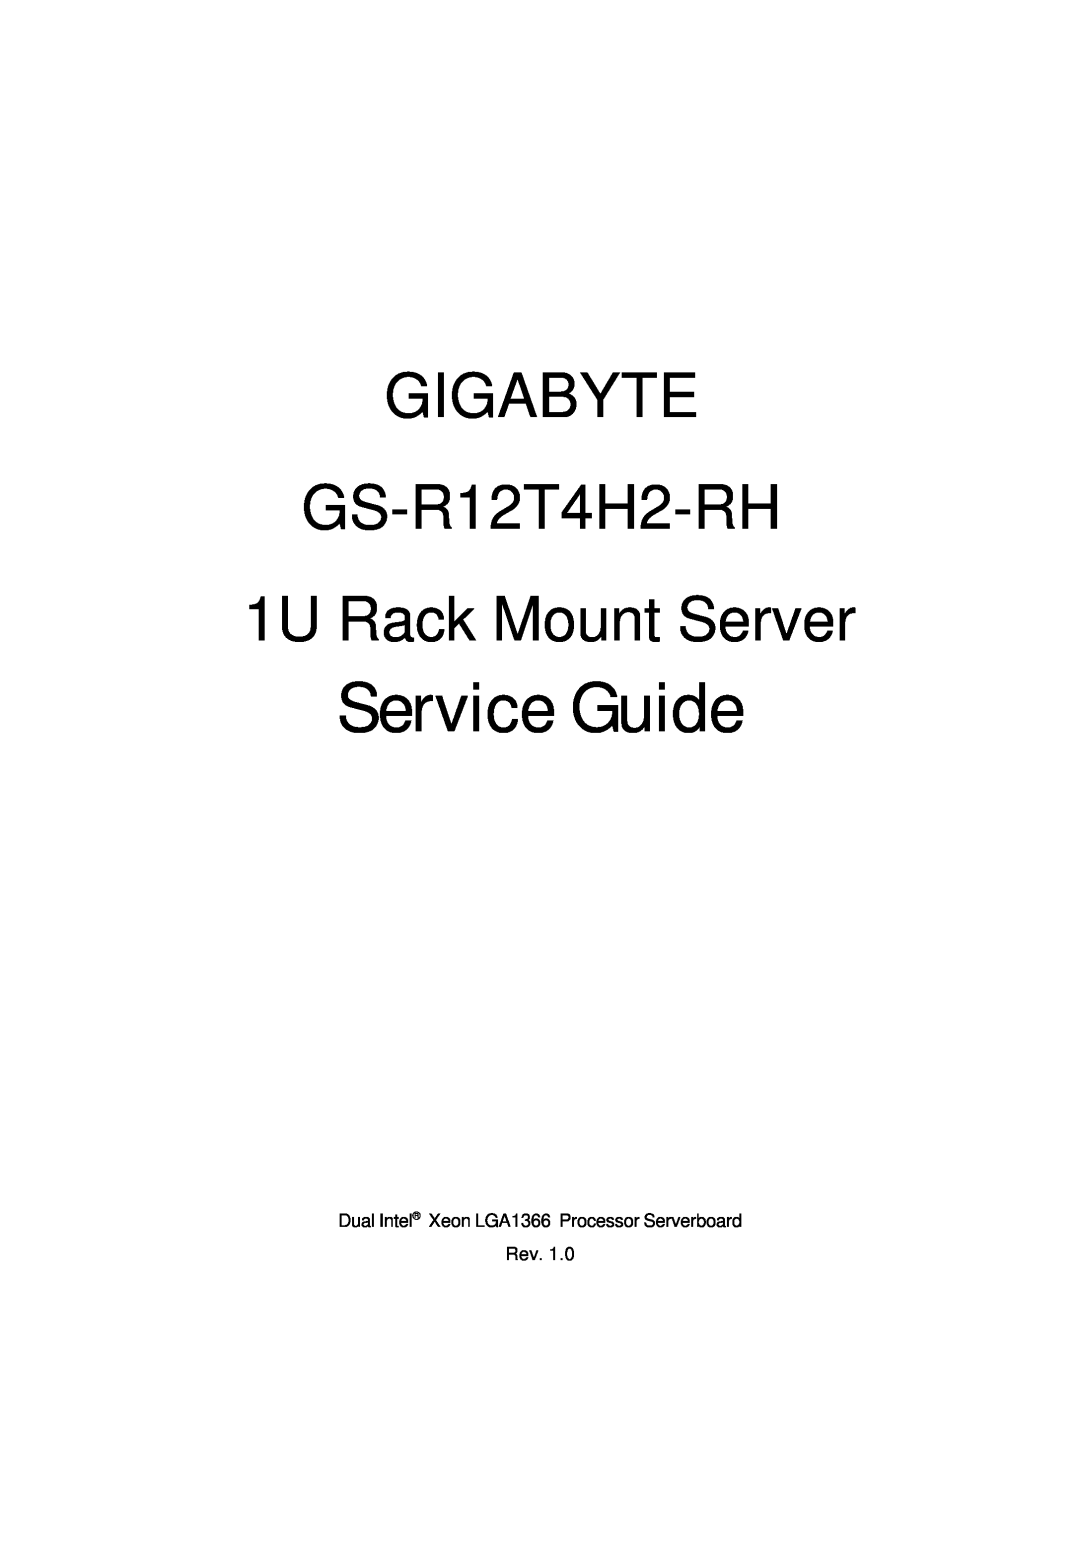 Gigabyte manual Gigabyte, Service Guide, GS-R12T4H2-RH 1U Rack Mount Server 